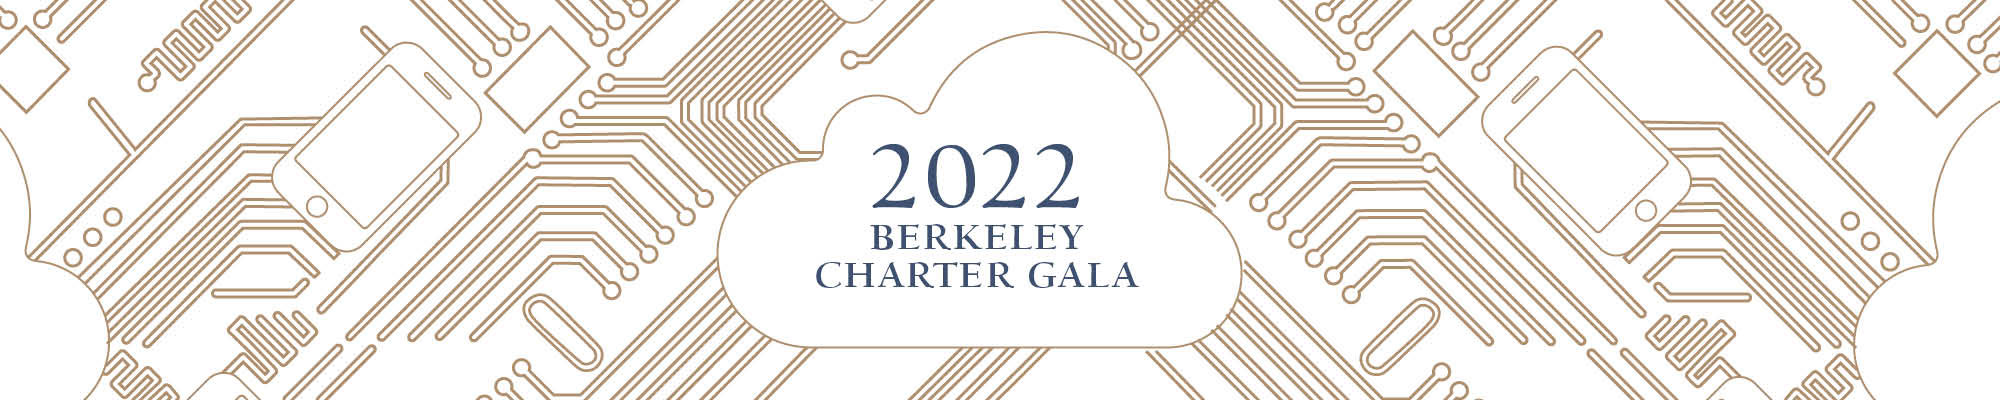 Berkeley Charter Gala 2022